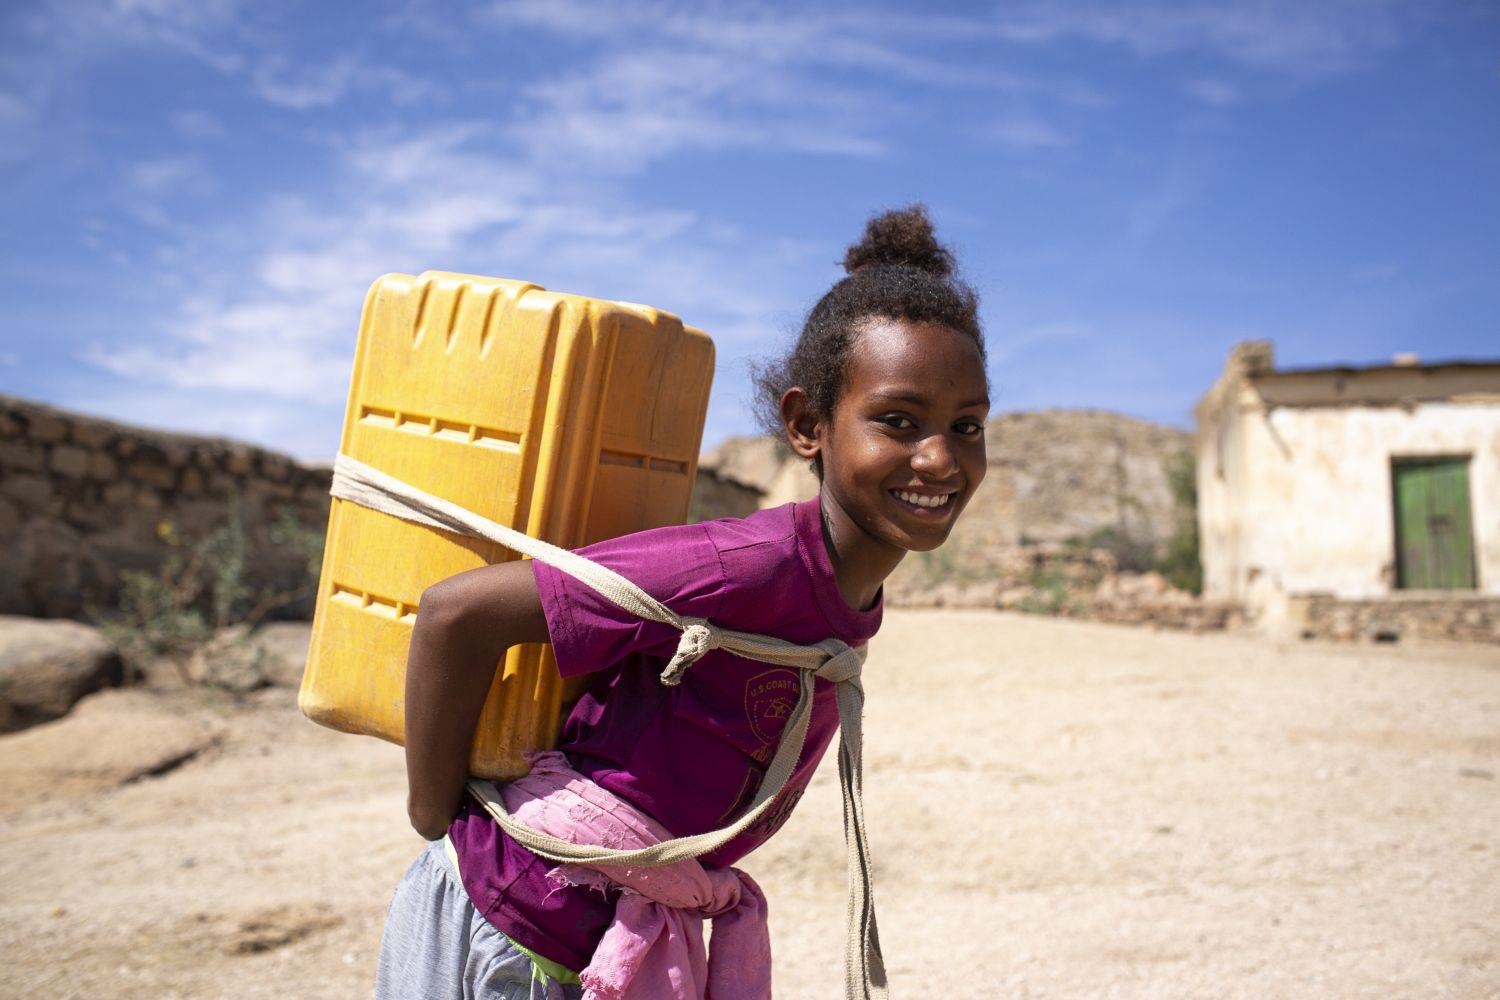 Wasser zu holen, ist in Eritrea meist Aufgabe der Kinder und Frauen (Foto: Philipp Spalek / Caritas international)